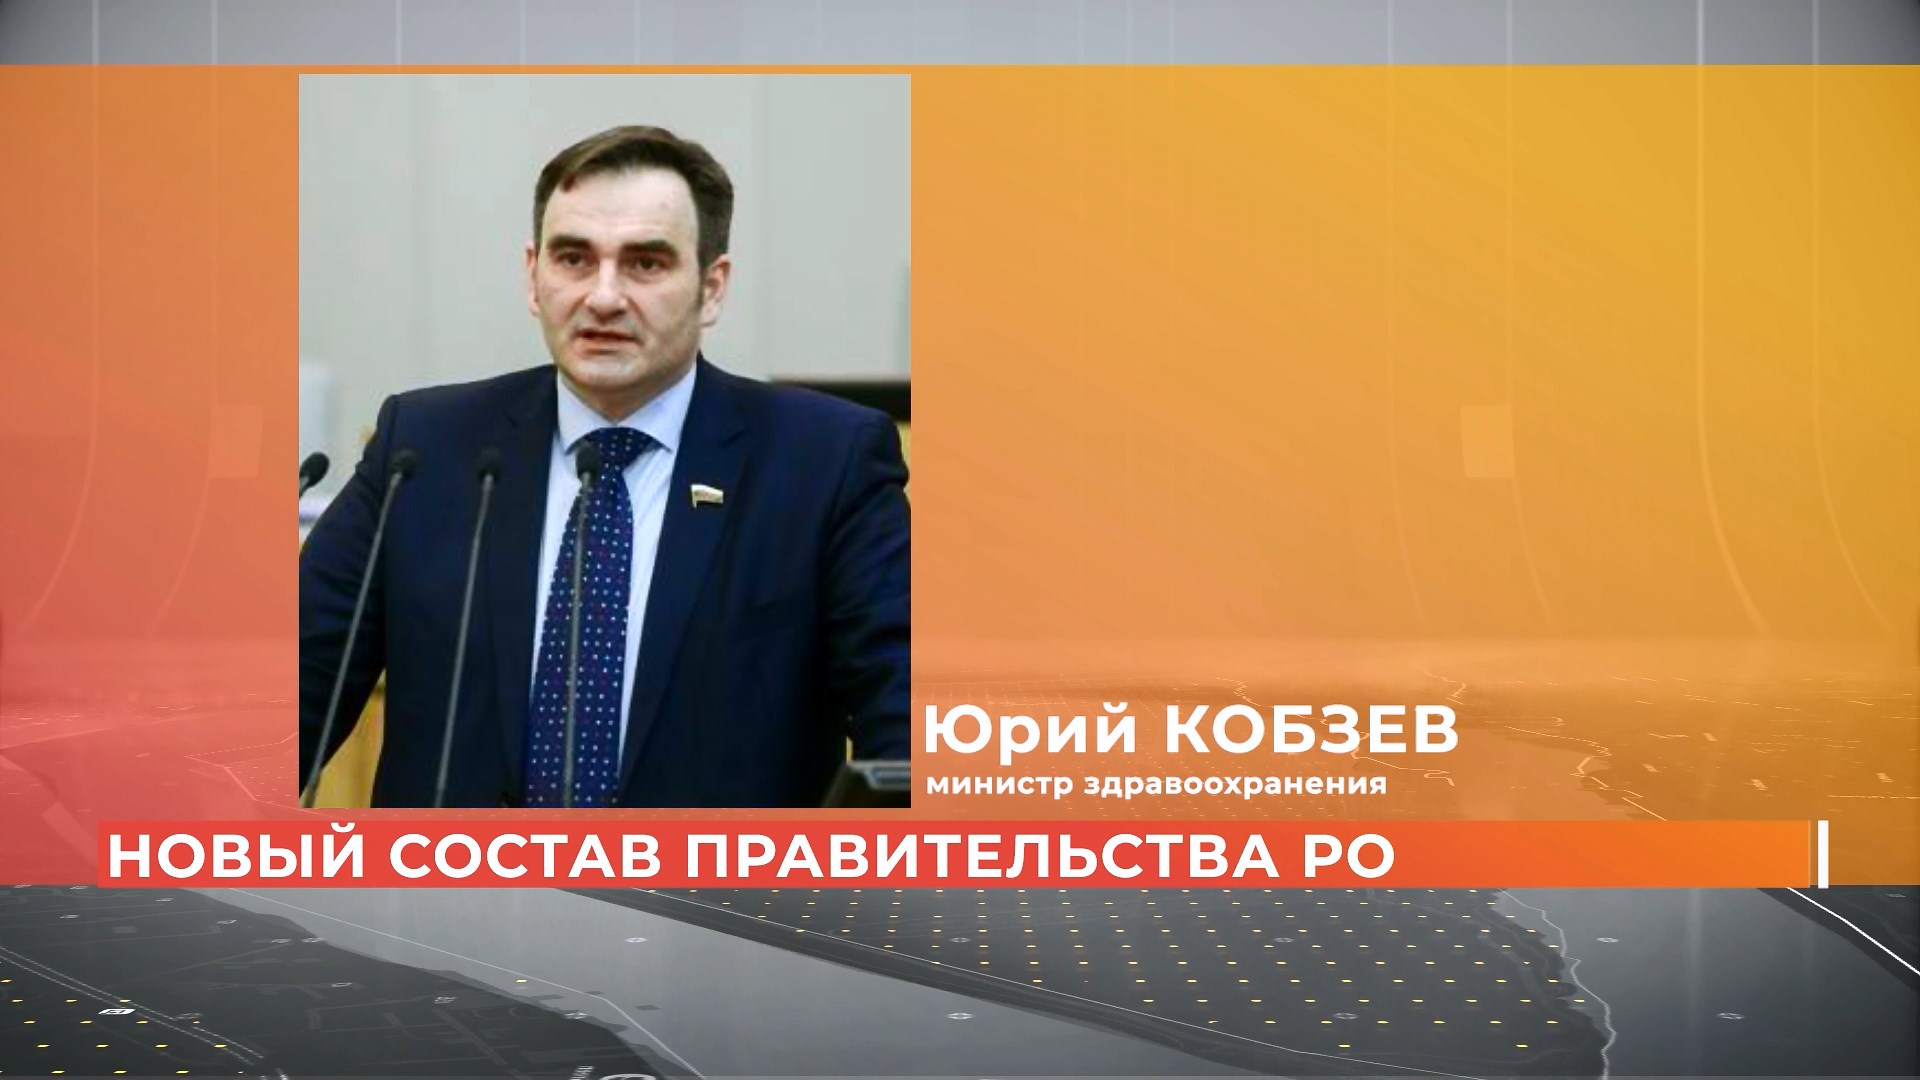 Новым министром здравоохранения стал Юрий Кобзев: изменения в составе областного правительства